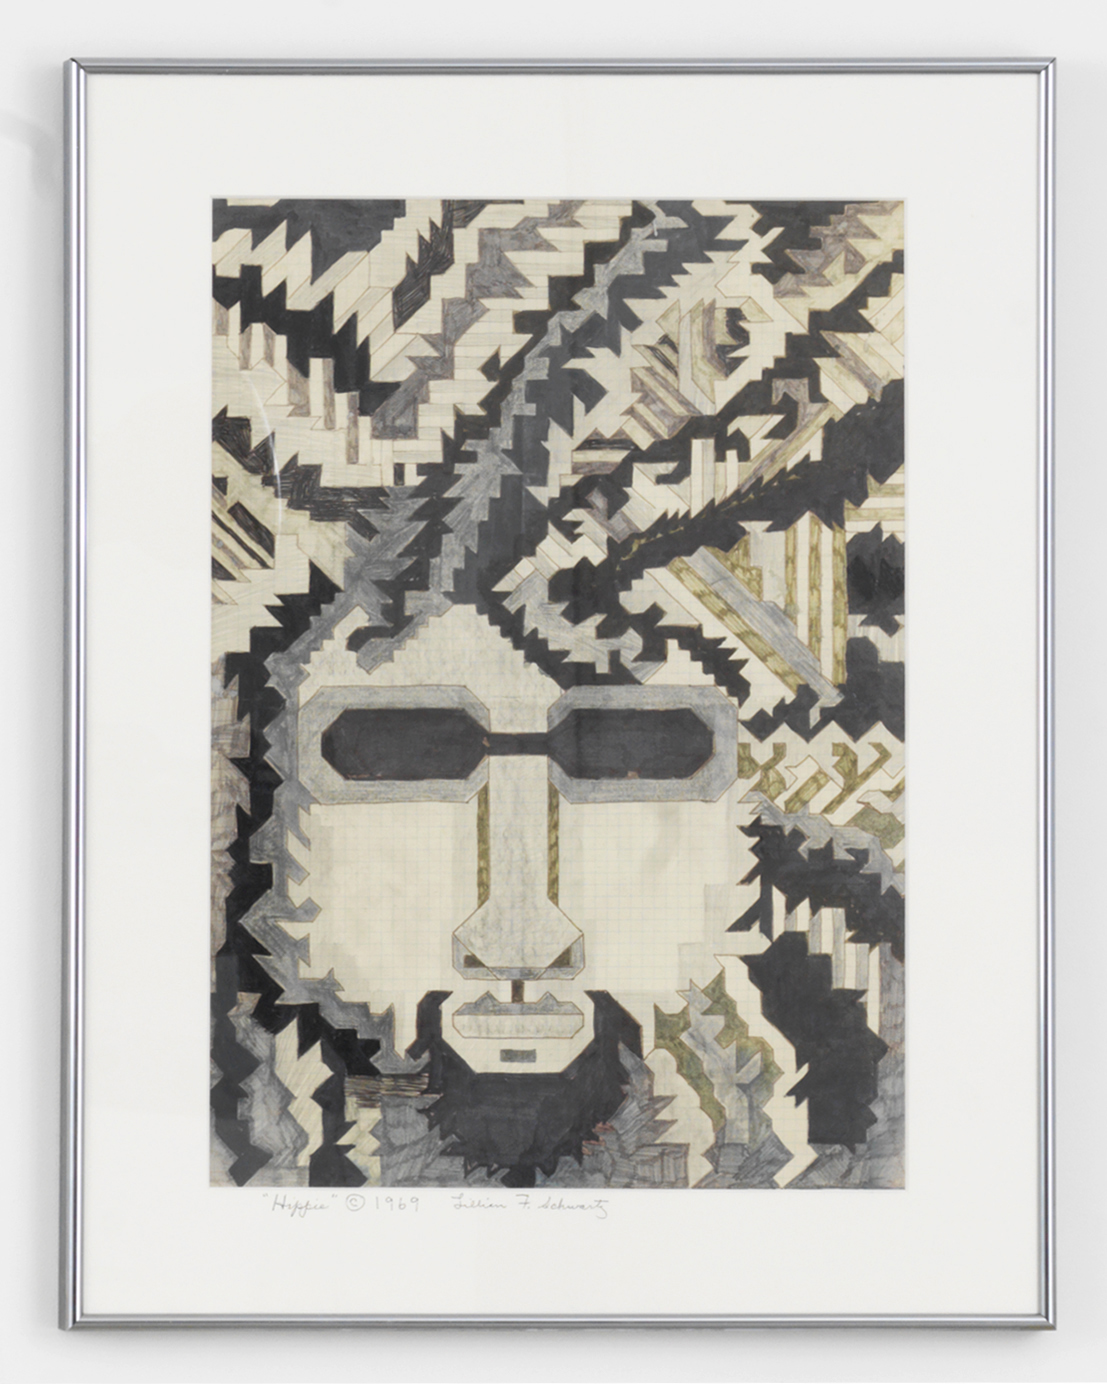 Lillian Schwartz, Hippie, 1969, black marker, graphite, crayon, framed: 27h x 21w in.